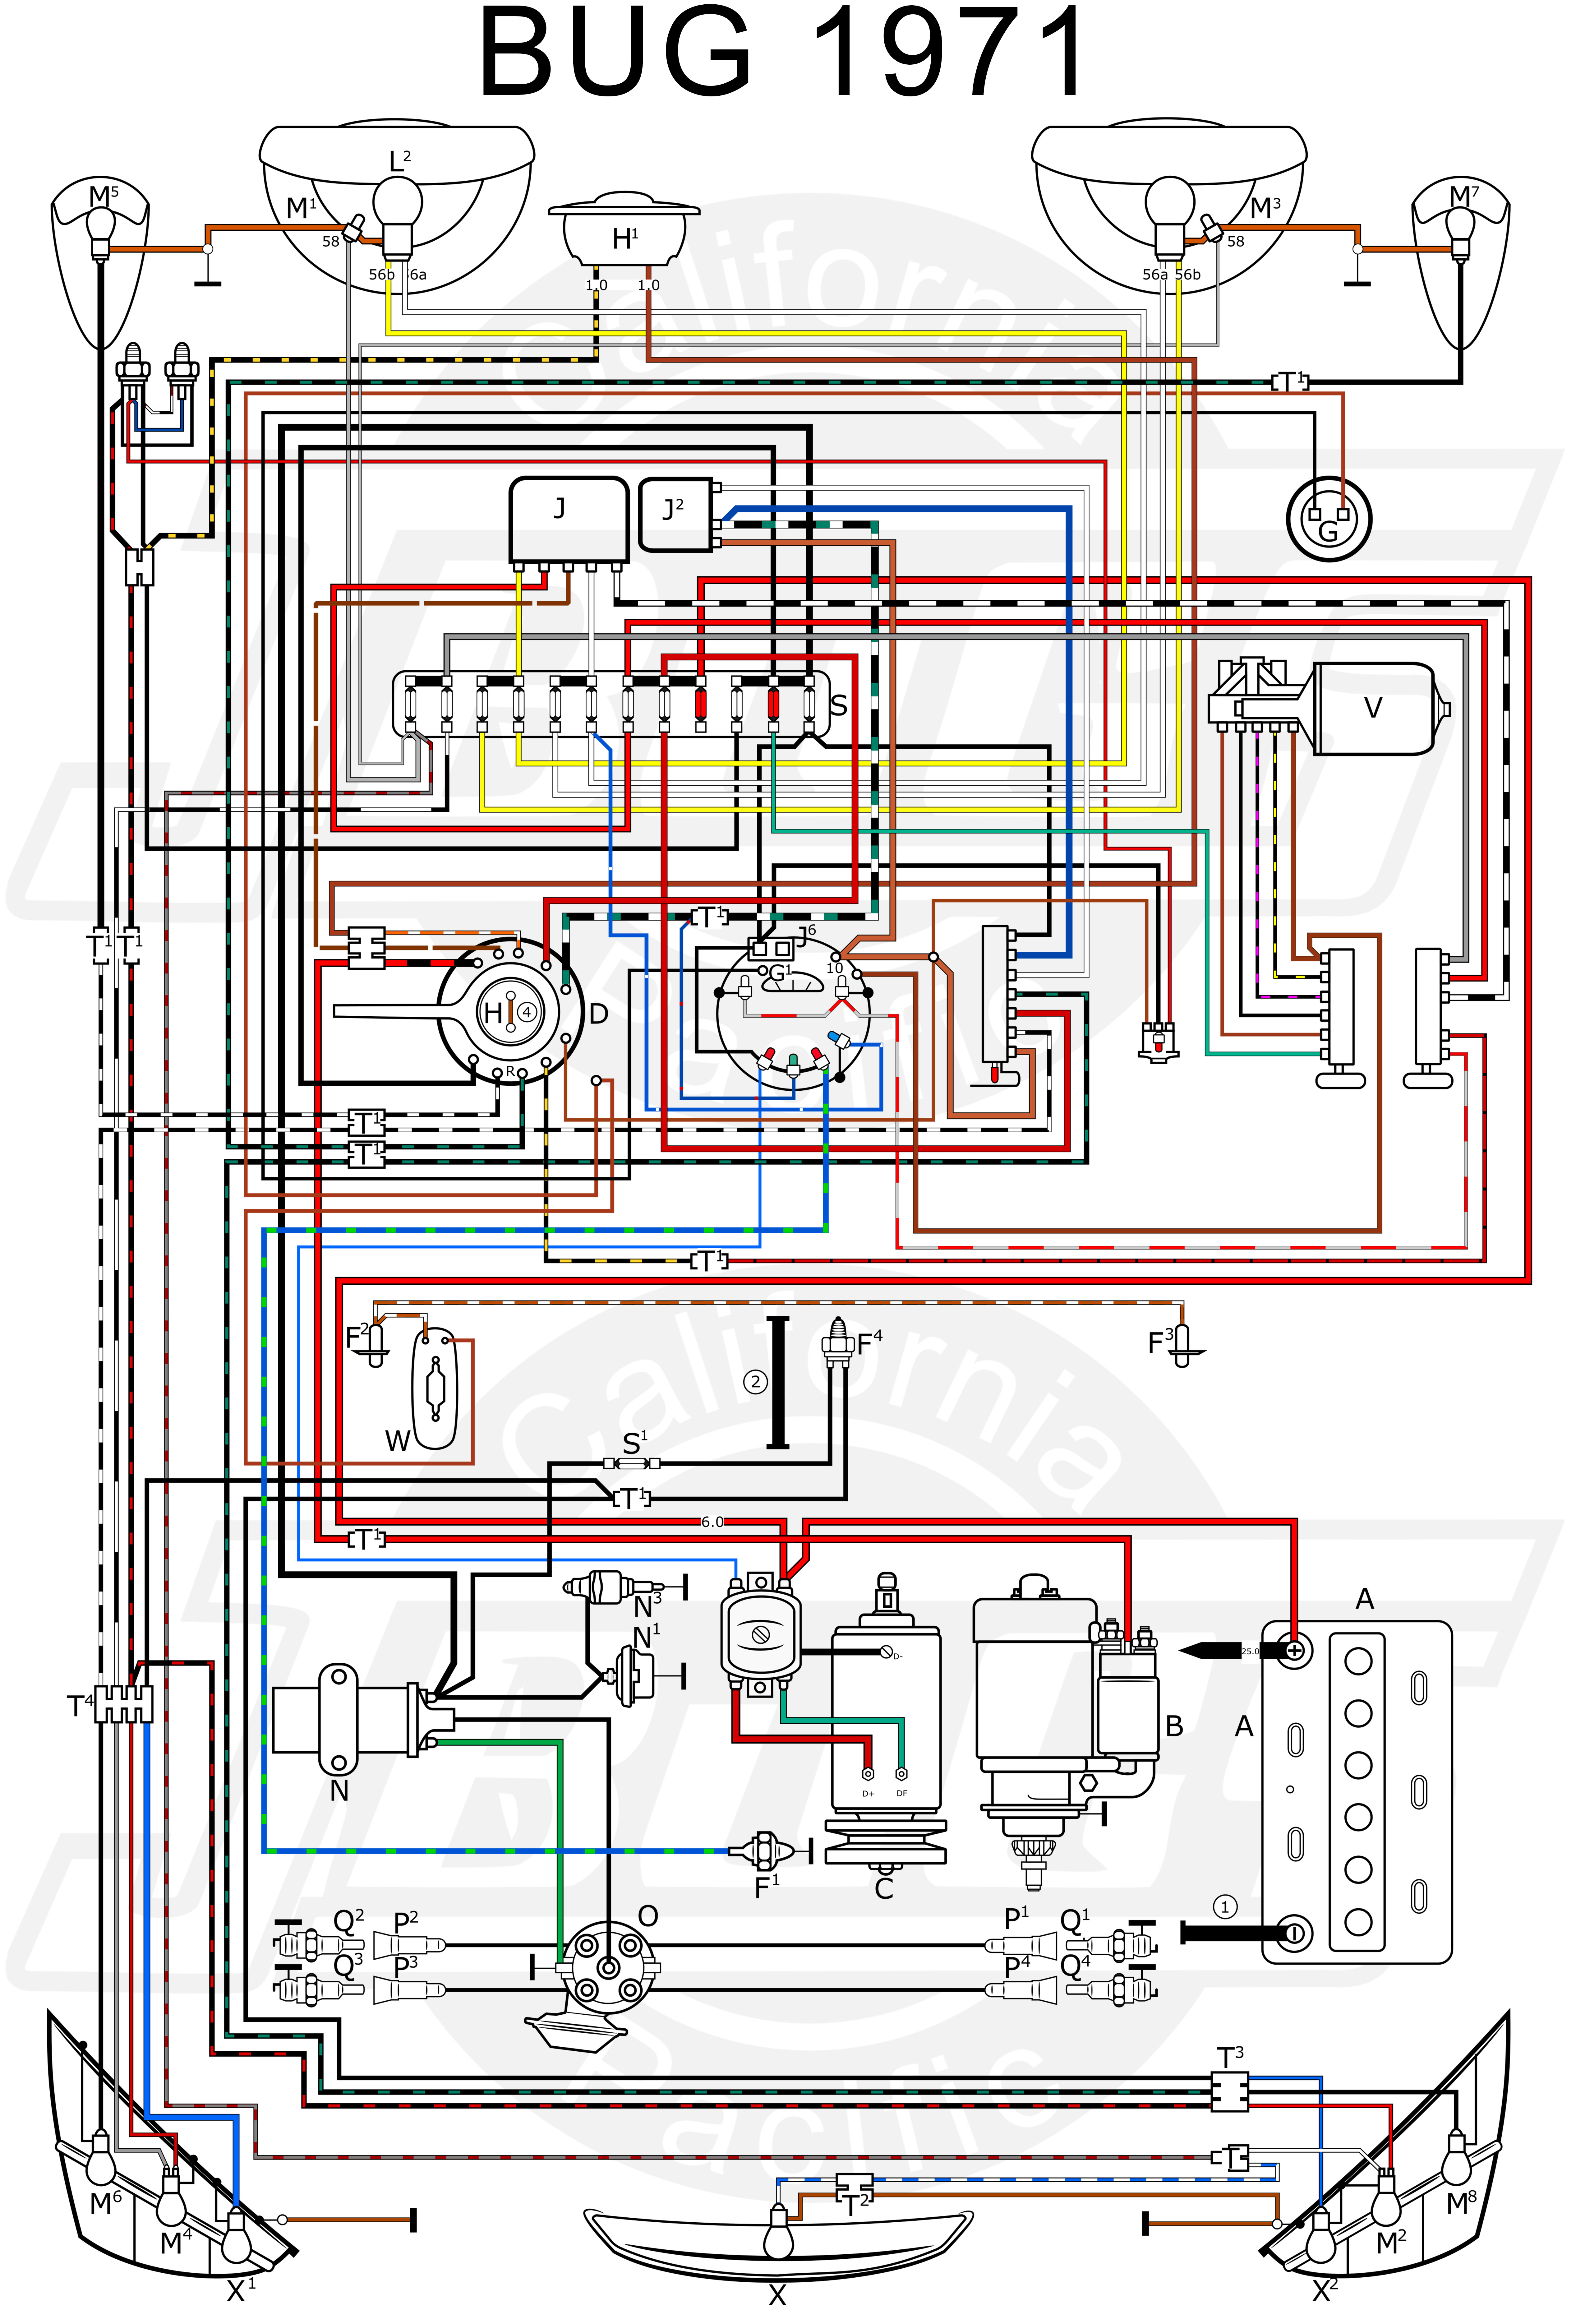 1974 Vw Beetle Wiring Diagram - Wiring Diagram